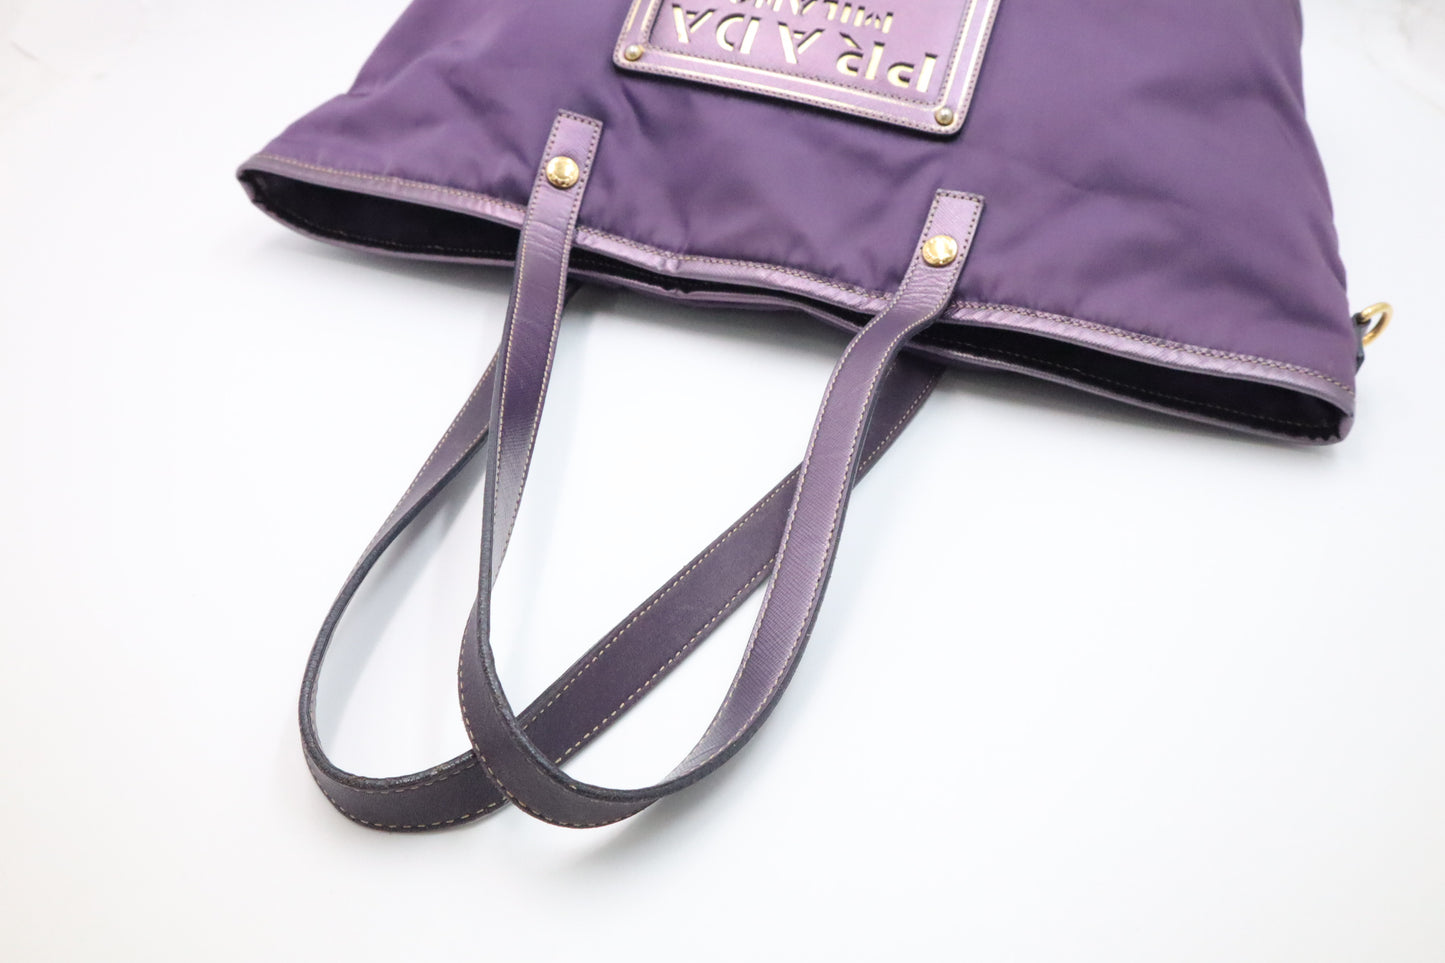 Prada Tote Bag in Purple Nylon